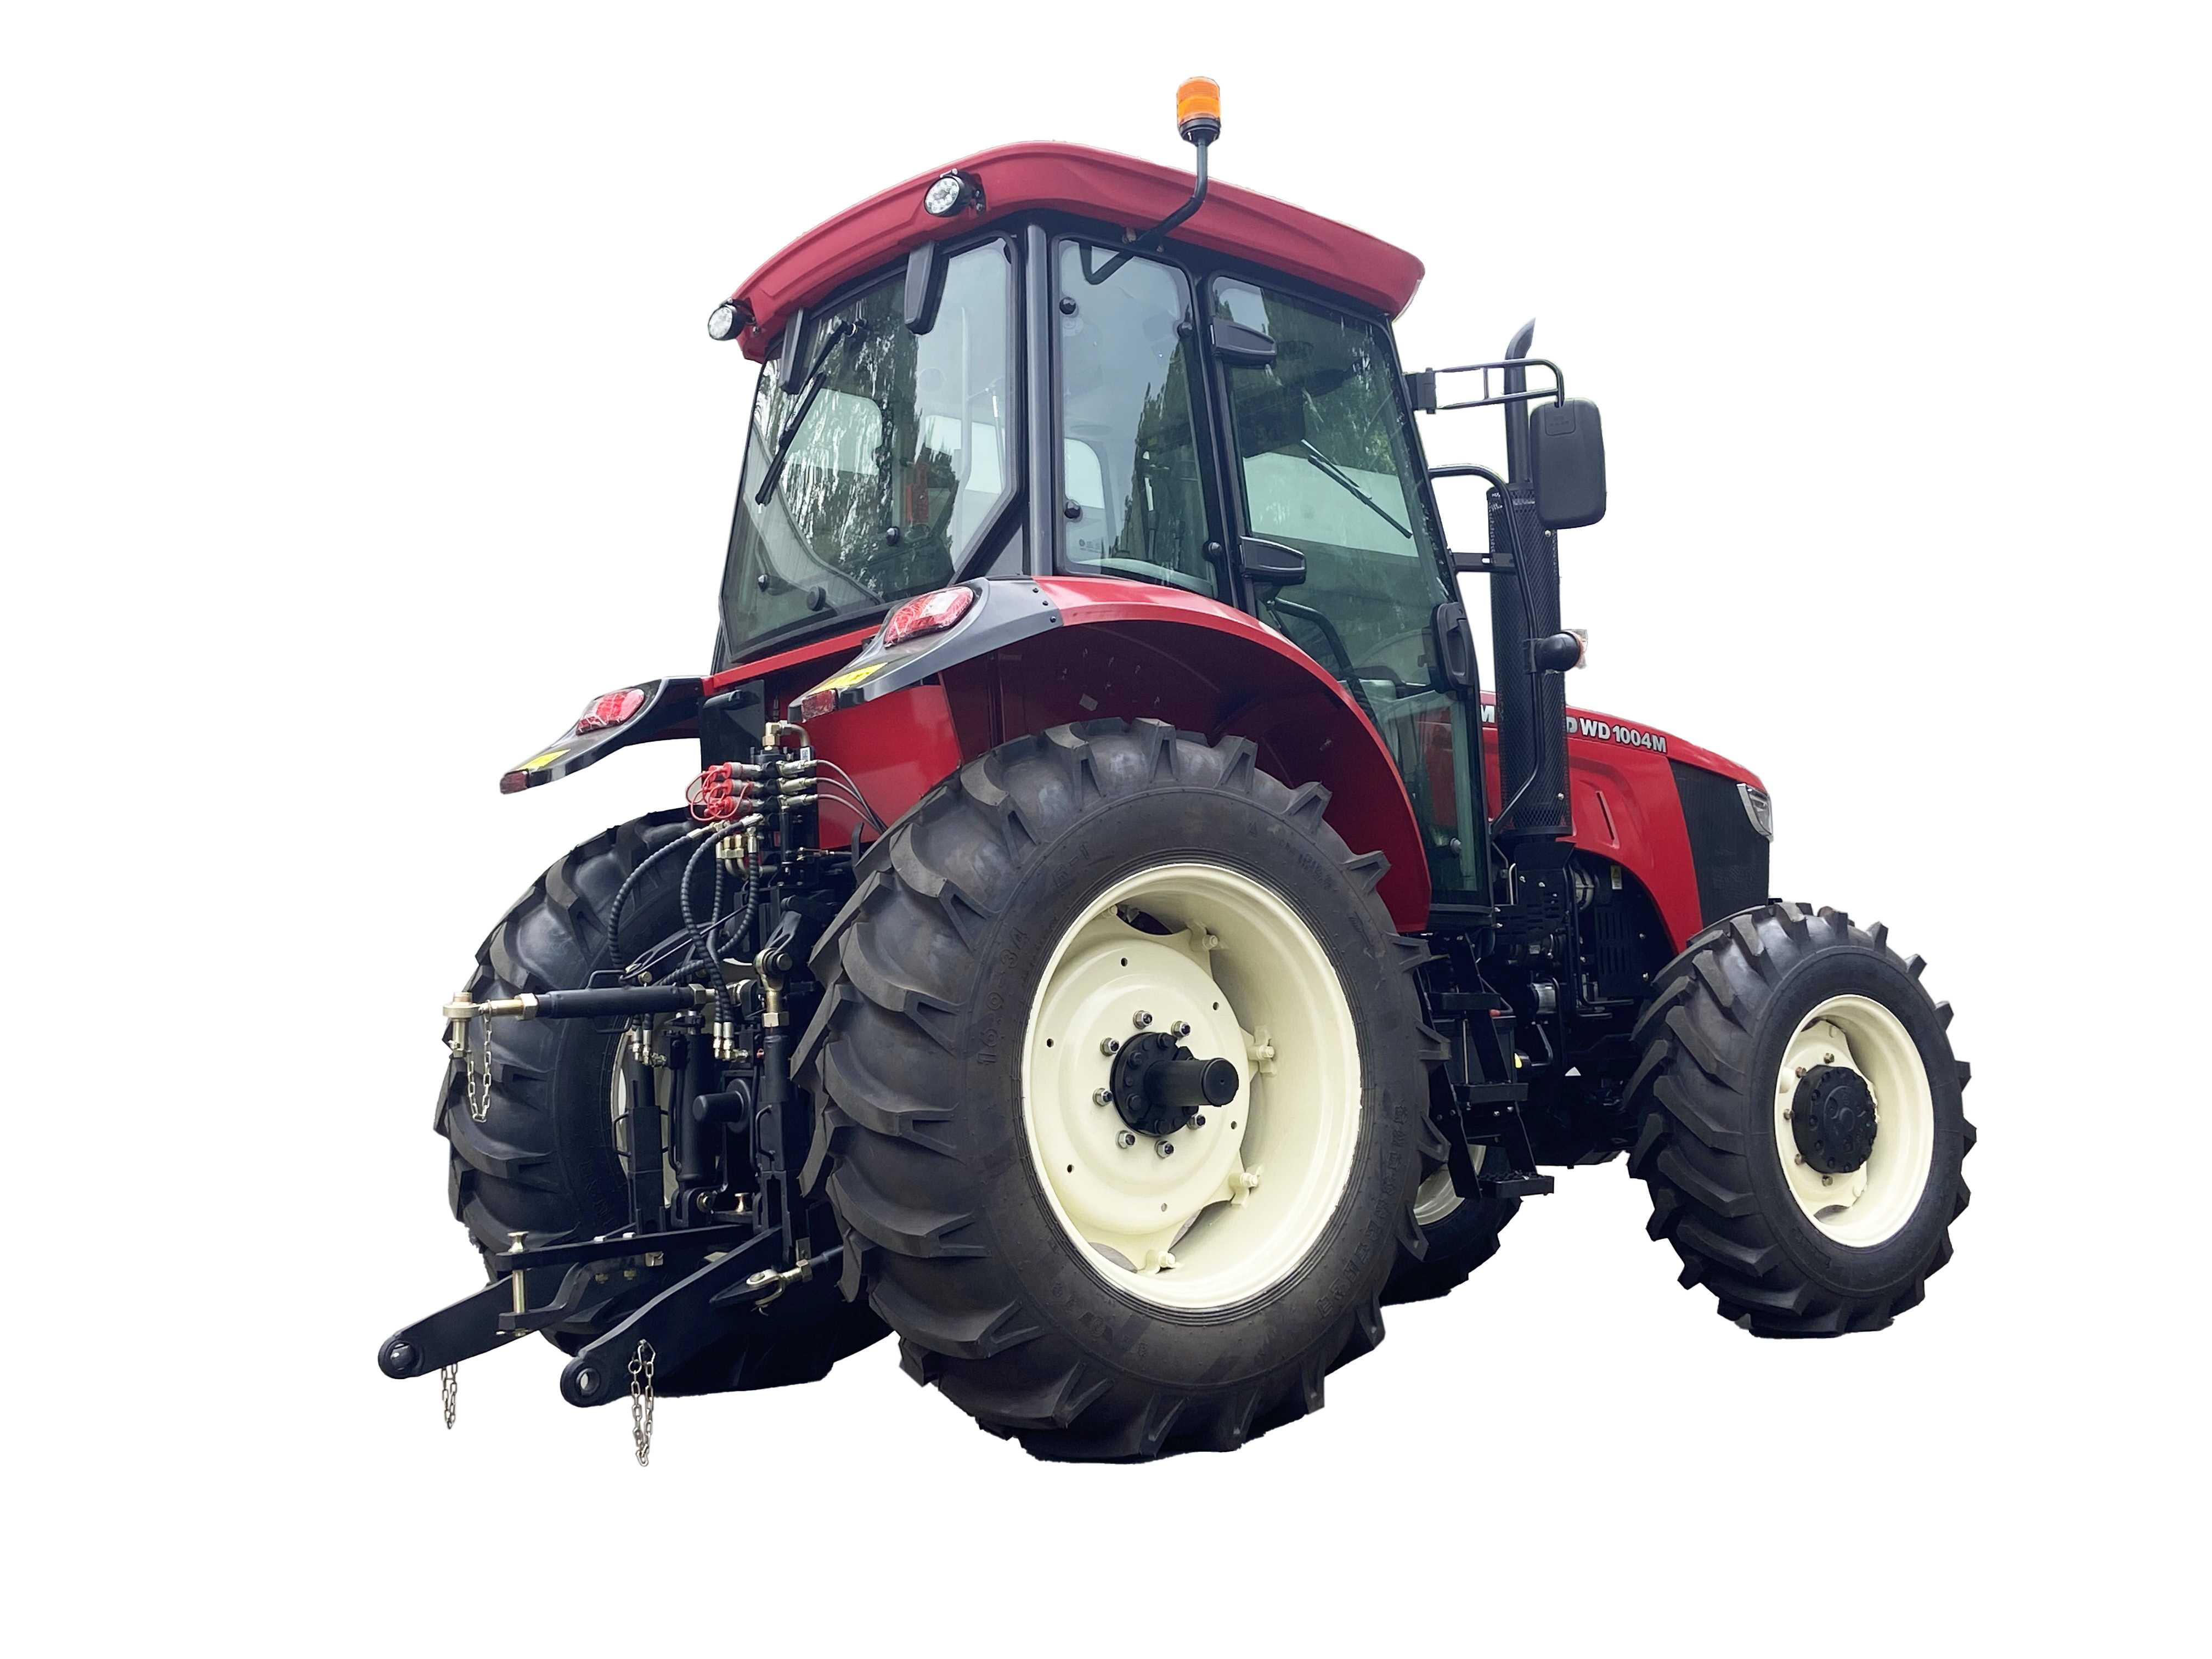 Tractor FMWORLD - Cabina 1104M